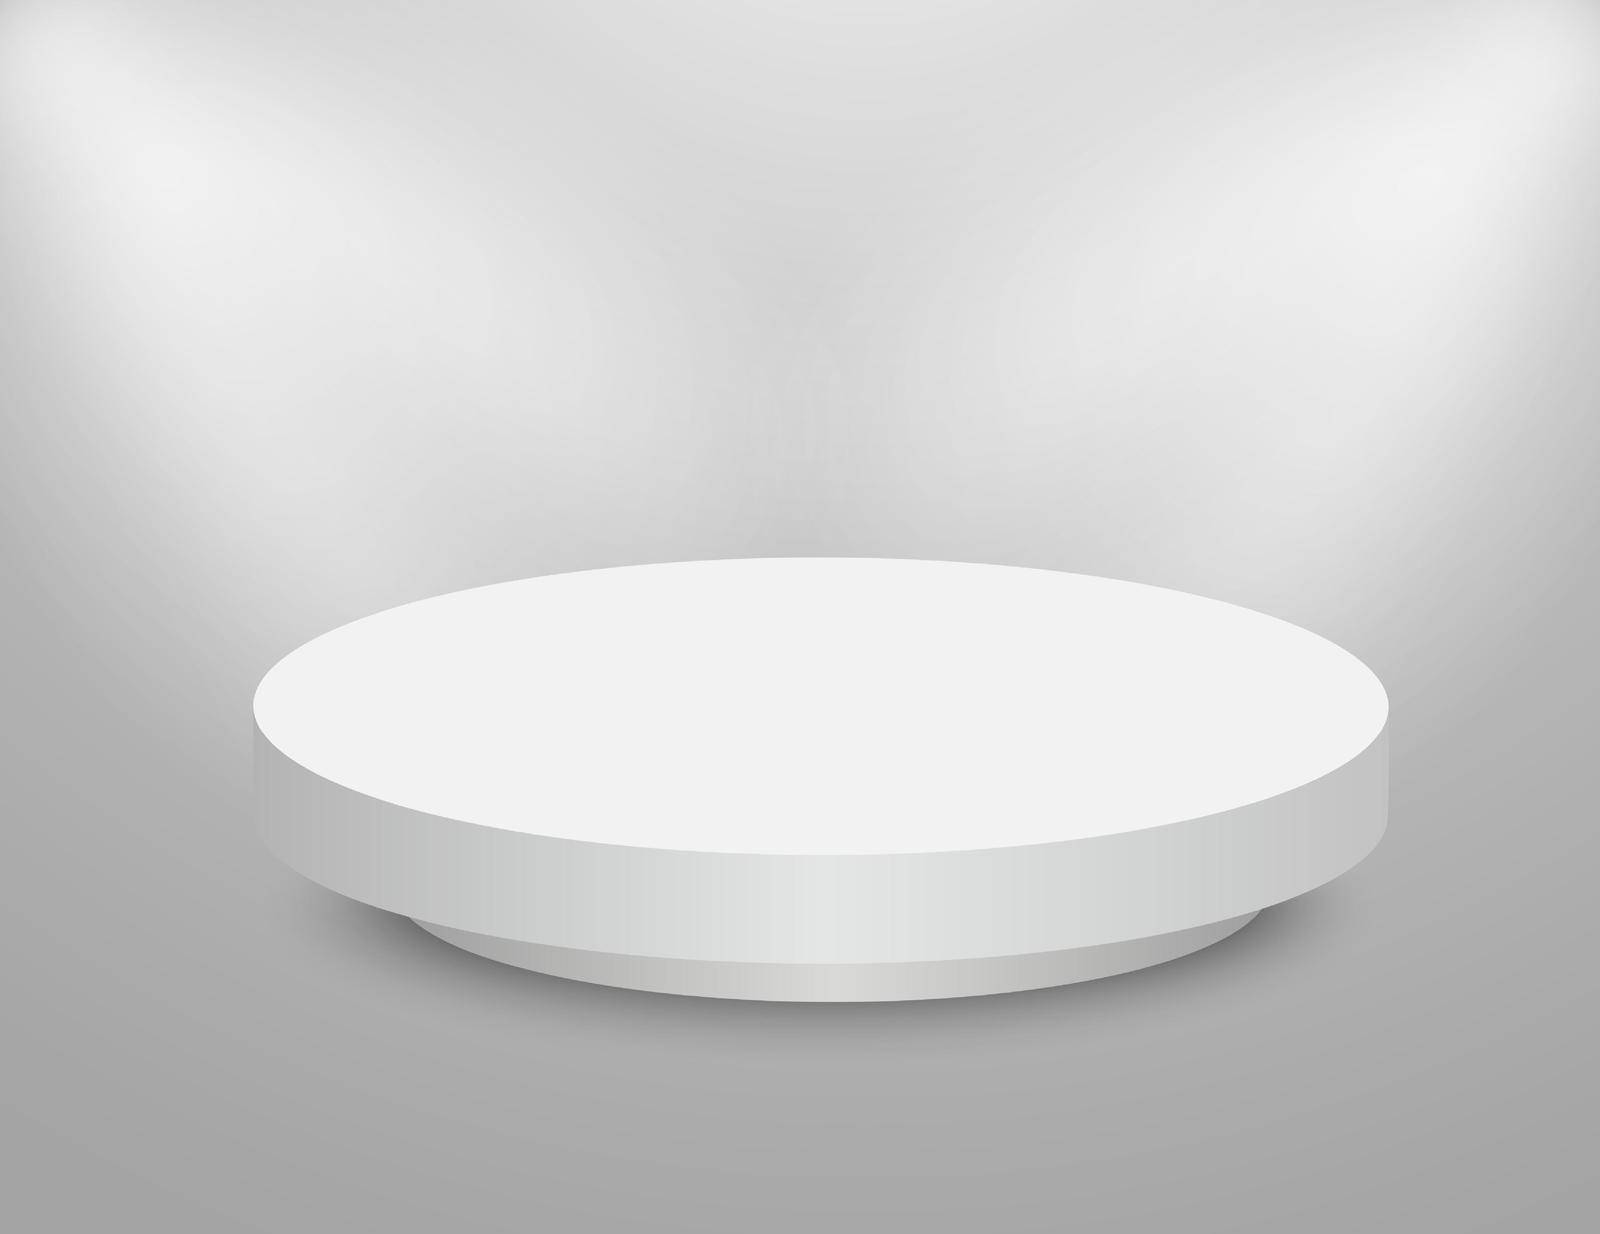 Podium 3D round stage. Circle white pedestal. Empty vector showroom platform by Elena_Garder